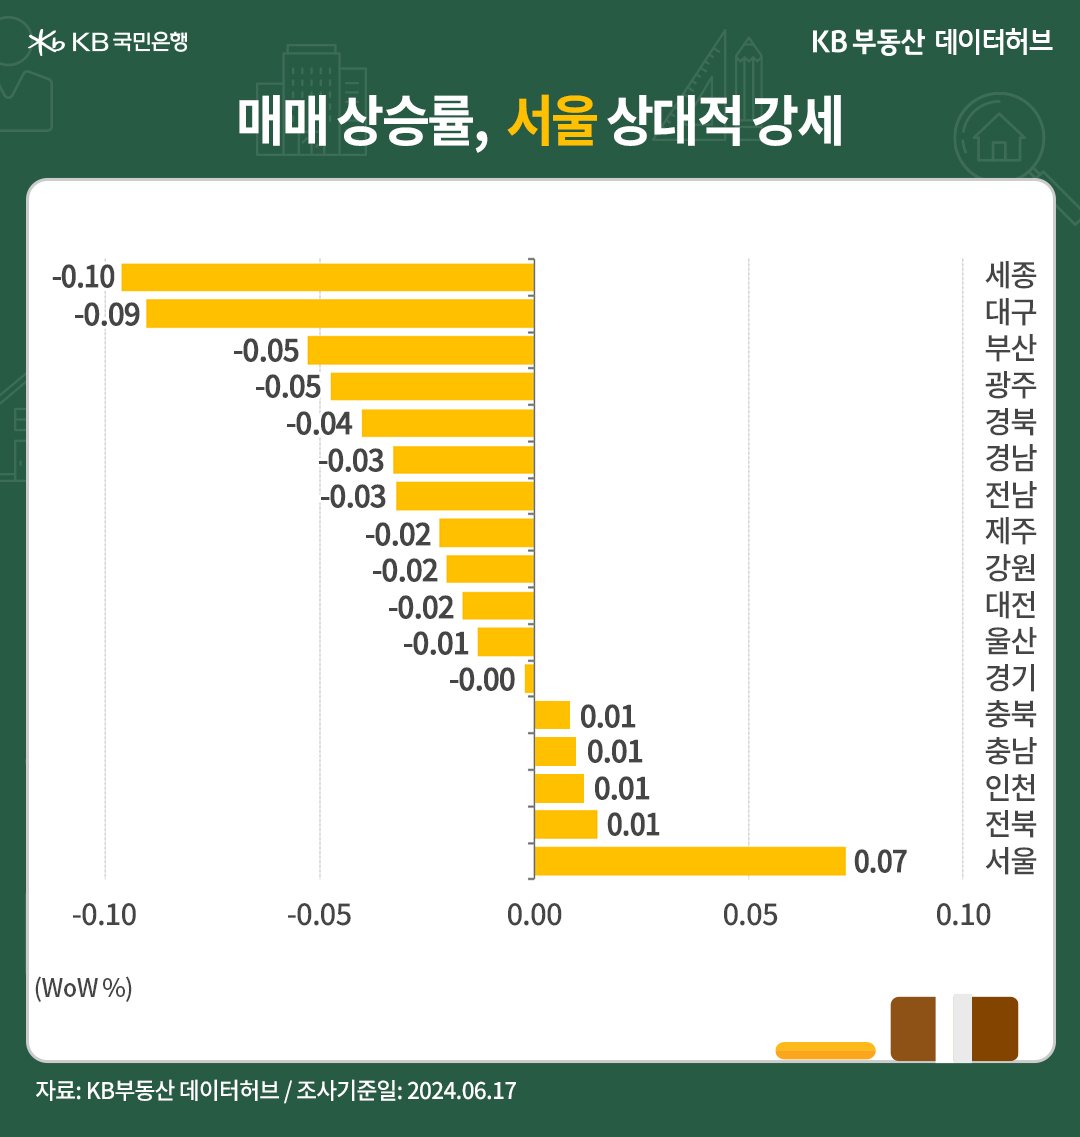 '전국' 권역별 '매매가격'은 서울 5주째 상승, 수도권 3주째 상승한 내용 등을 보여주는 그래프이다.